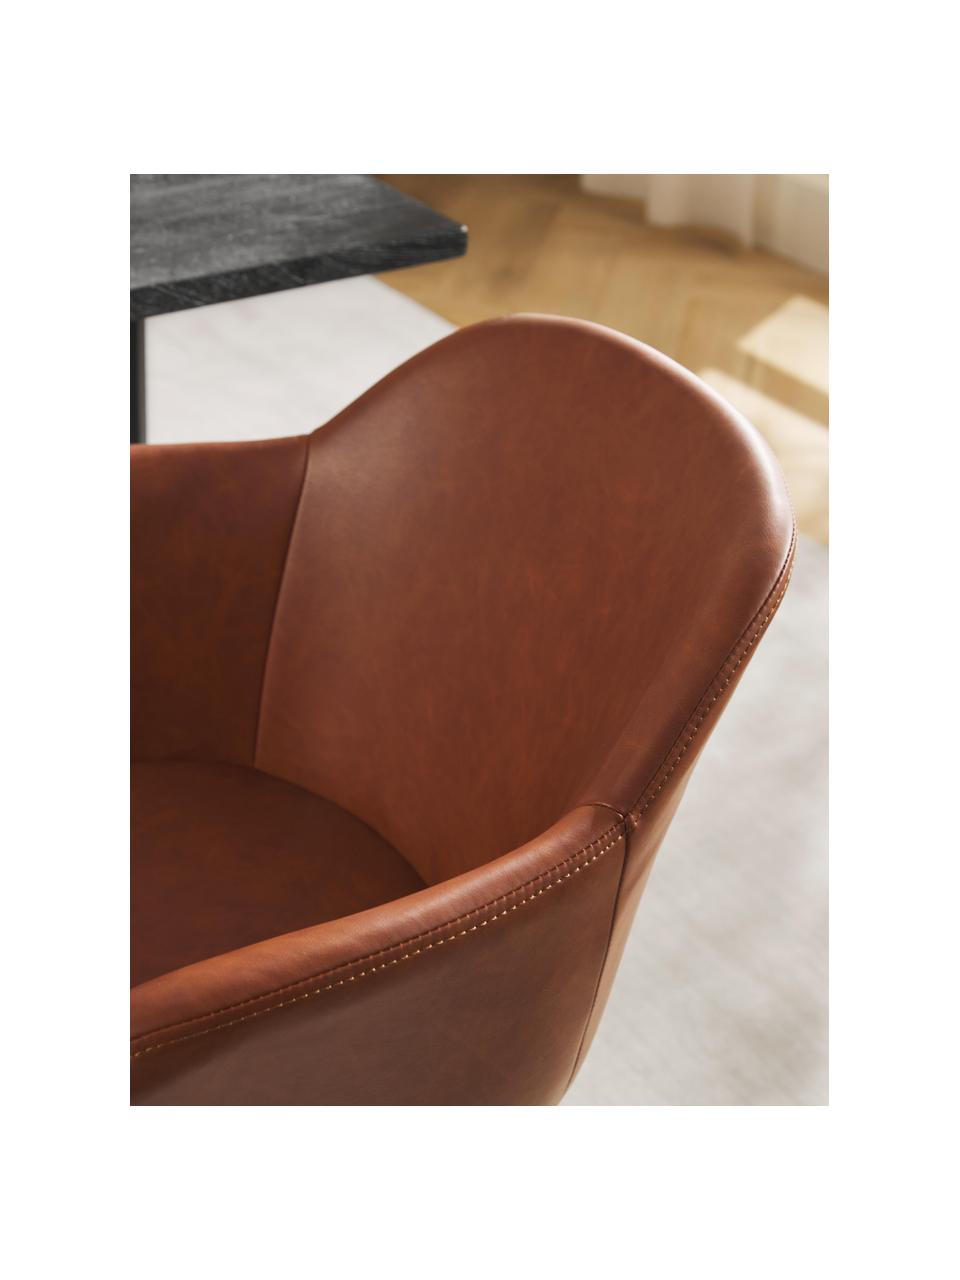 Kleine kunstleren fauteuil Fiji met smalle zitvlak, Bekleding: kunstleer (polyurethaan) , Poten: gepoedercoat metaal, Kunstleer nougat, B 58 x H 56 cm